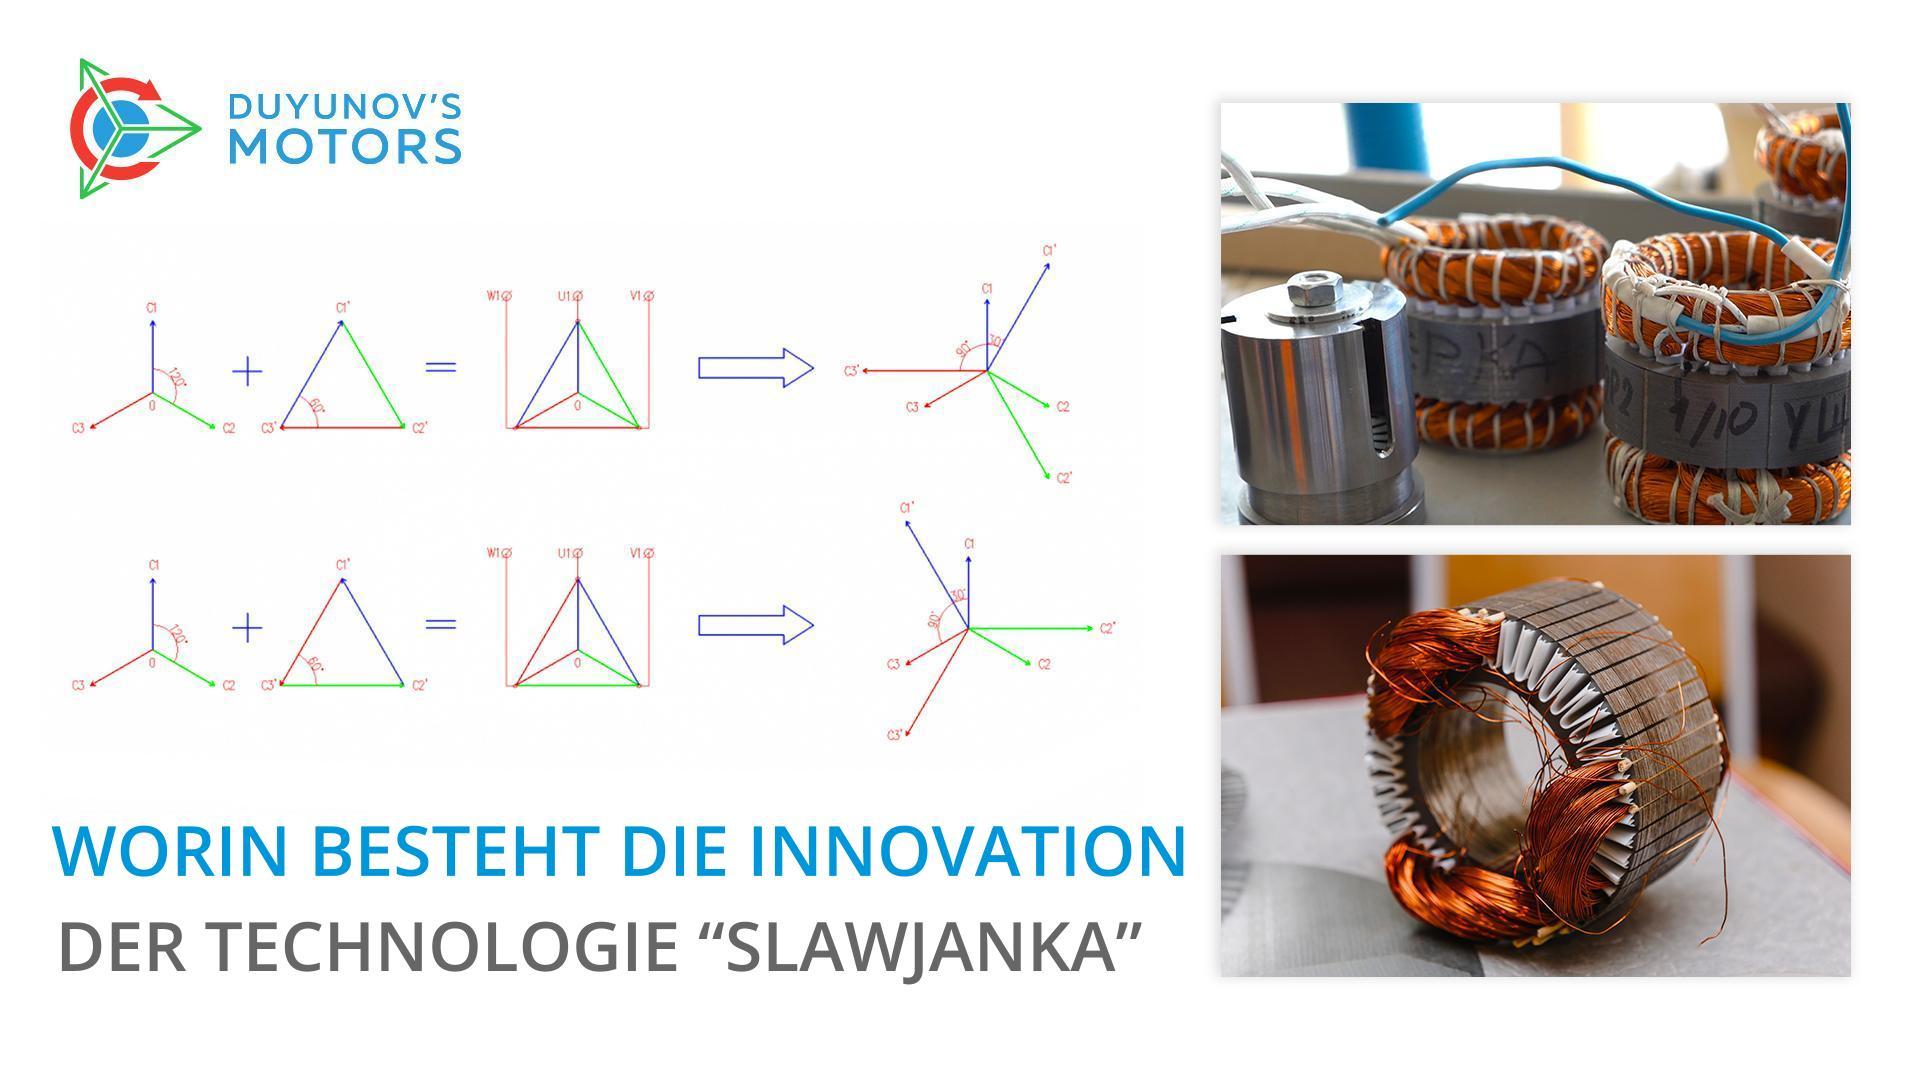 Worin besteht die Innovation der Technologie "Slawjanka"